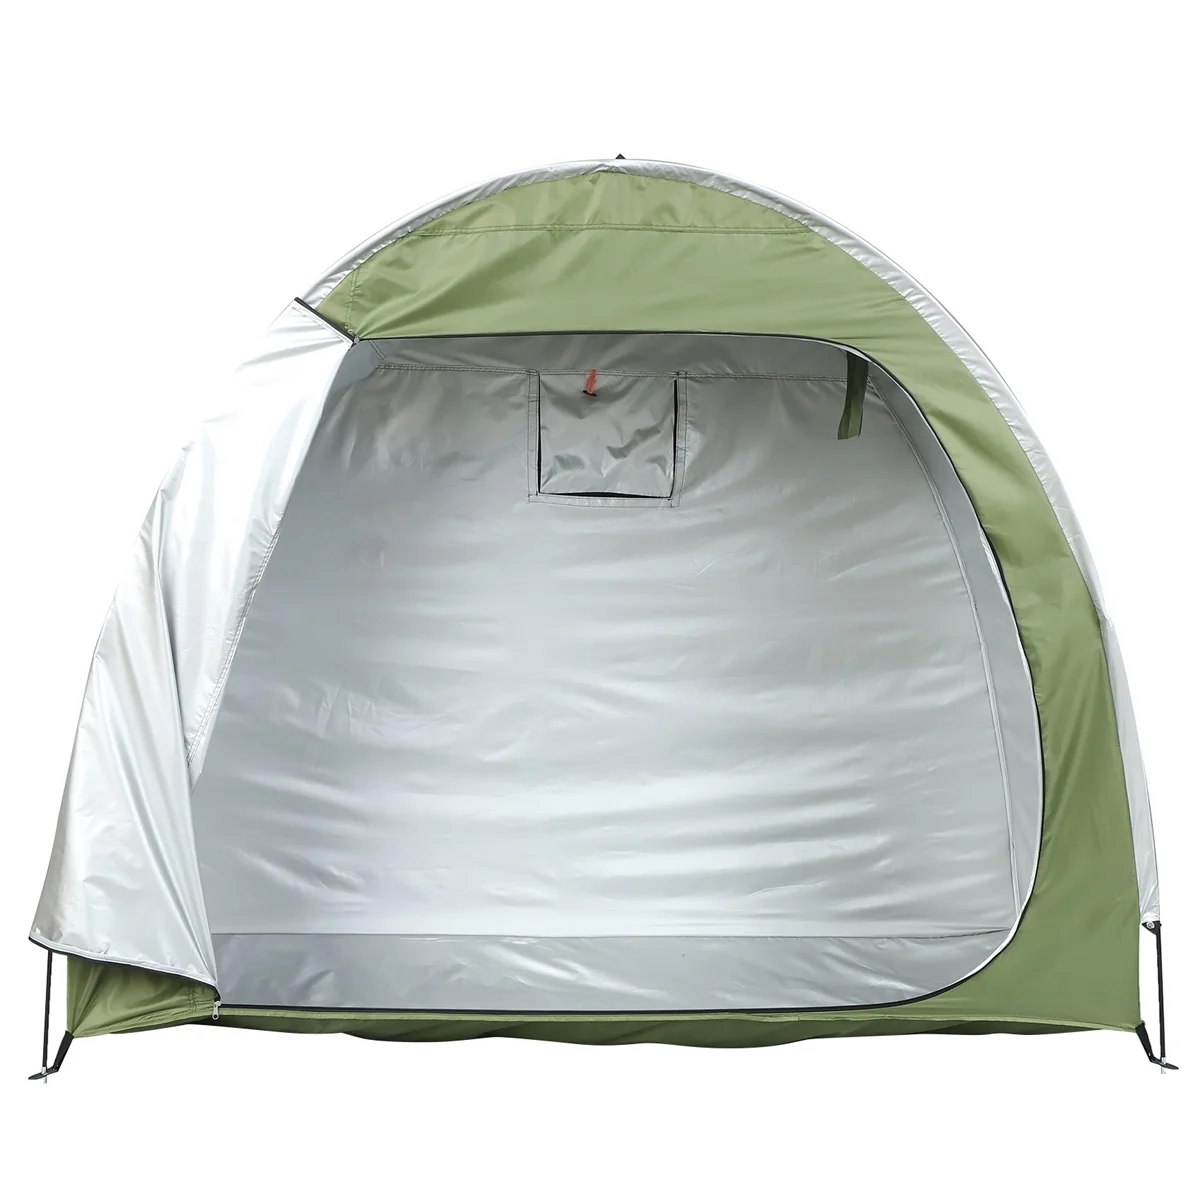 

Палатка для хранения велосипеда, палатка для велосипеда, навес для велосипеда на открытом воздухе, навес для хранения, палатка, водонепроницаемый складной навес для велосипеда